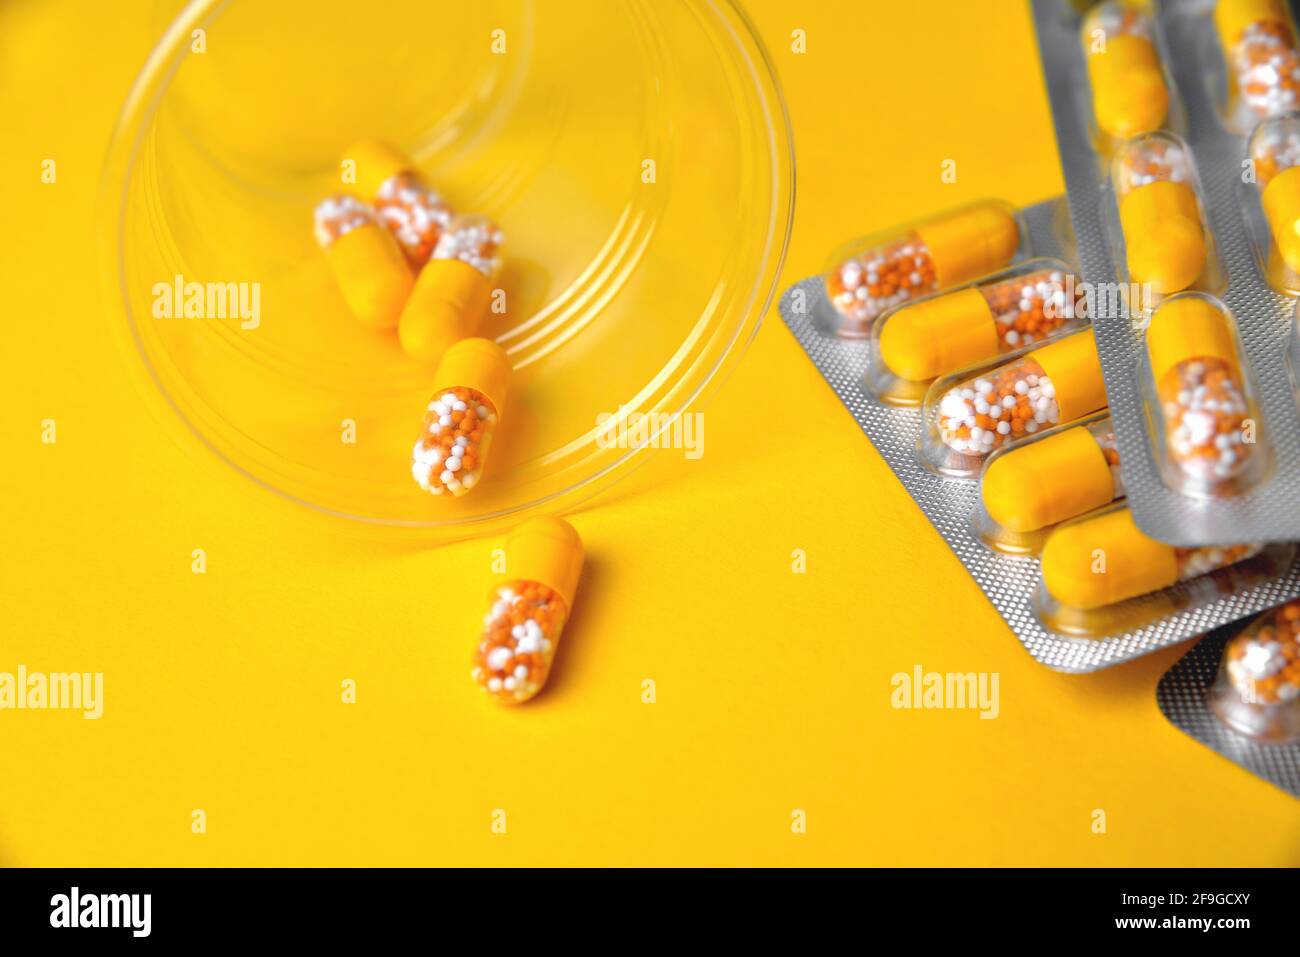 Kapseln in einer Blister und einem Glas. Medizinische Tabletten, Vitamine in einem Granulat, in gelben Kapseln auf einem gelben Hintergrund. Blur als kreative Idee der A Stockfoto